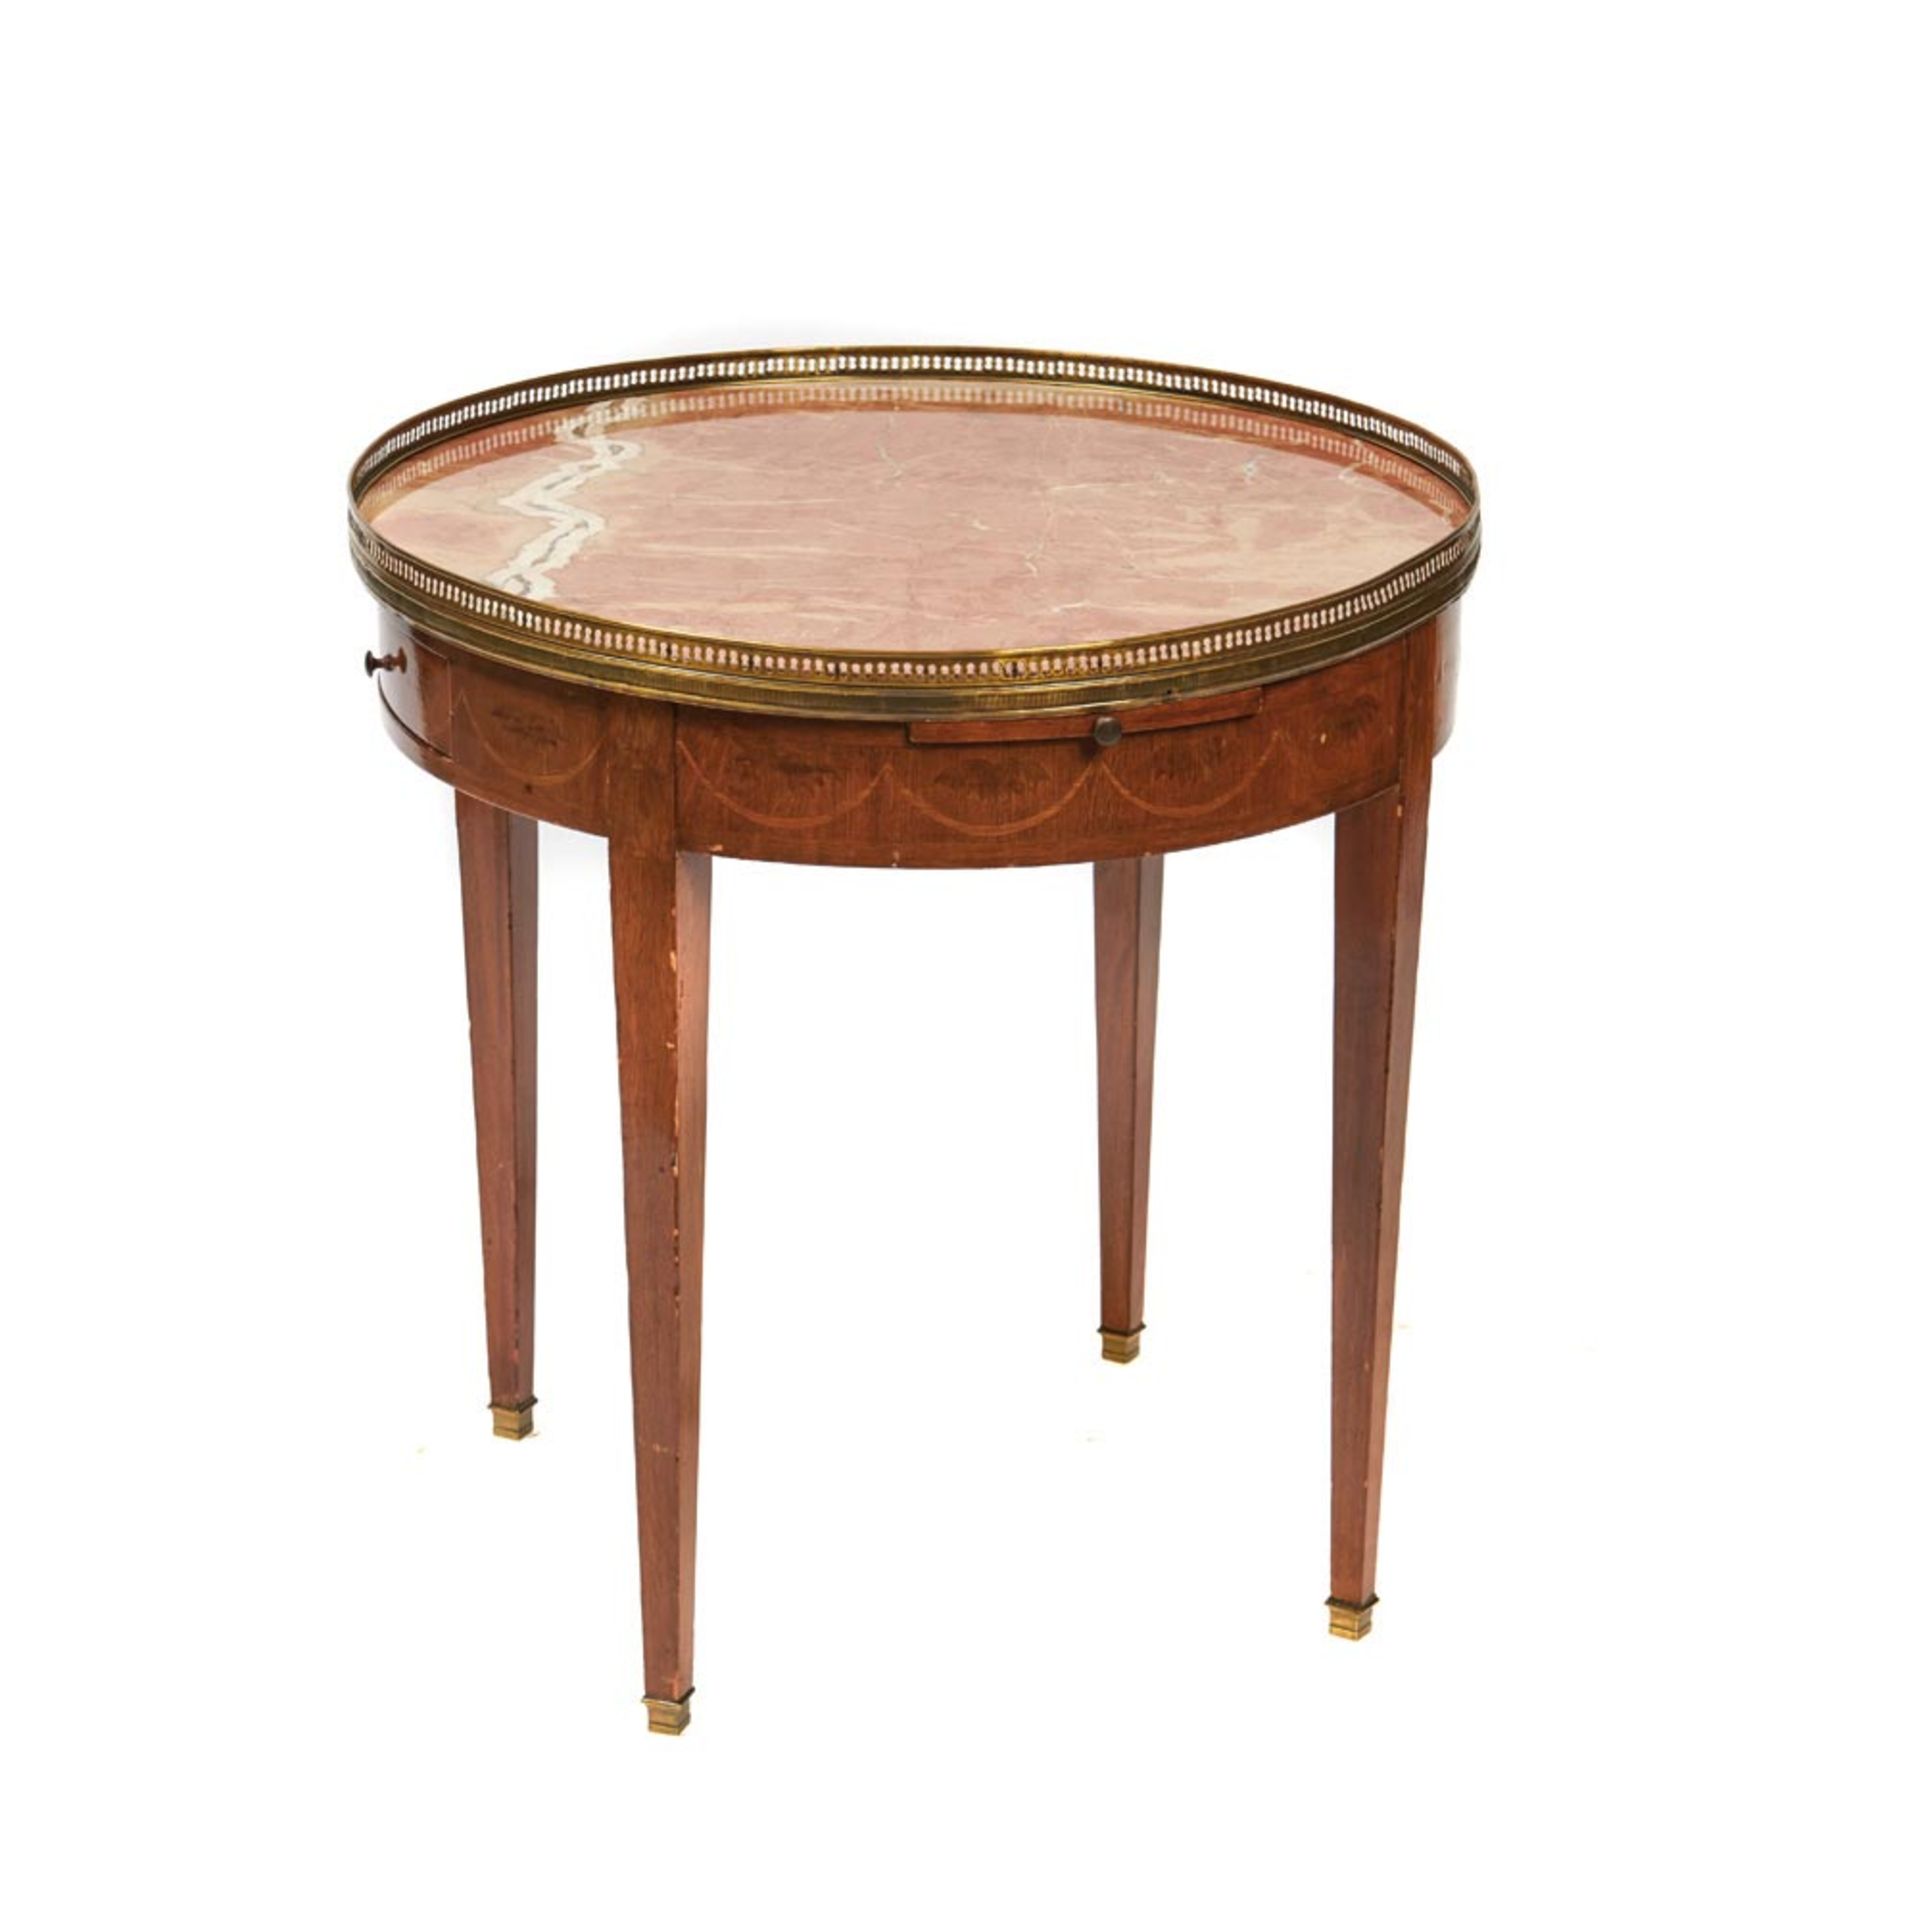 Mesa de centro circular estilo Luis XVI en madera de roble con marquetería vegetal y sobre en mármol